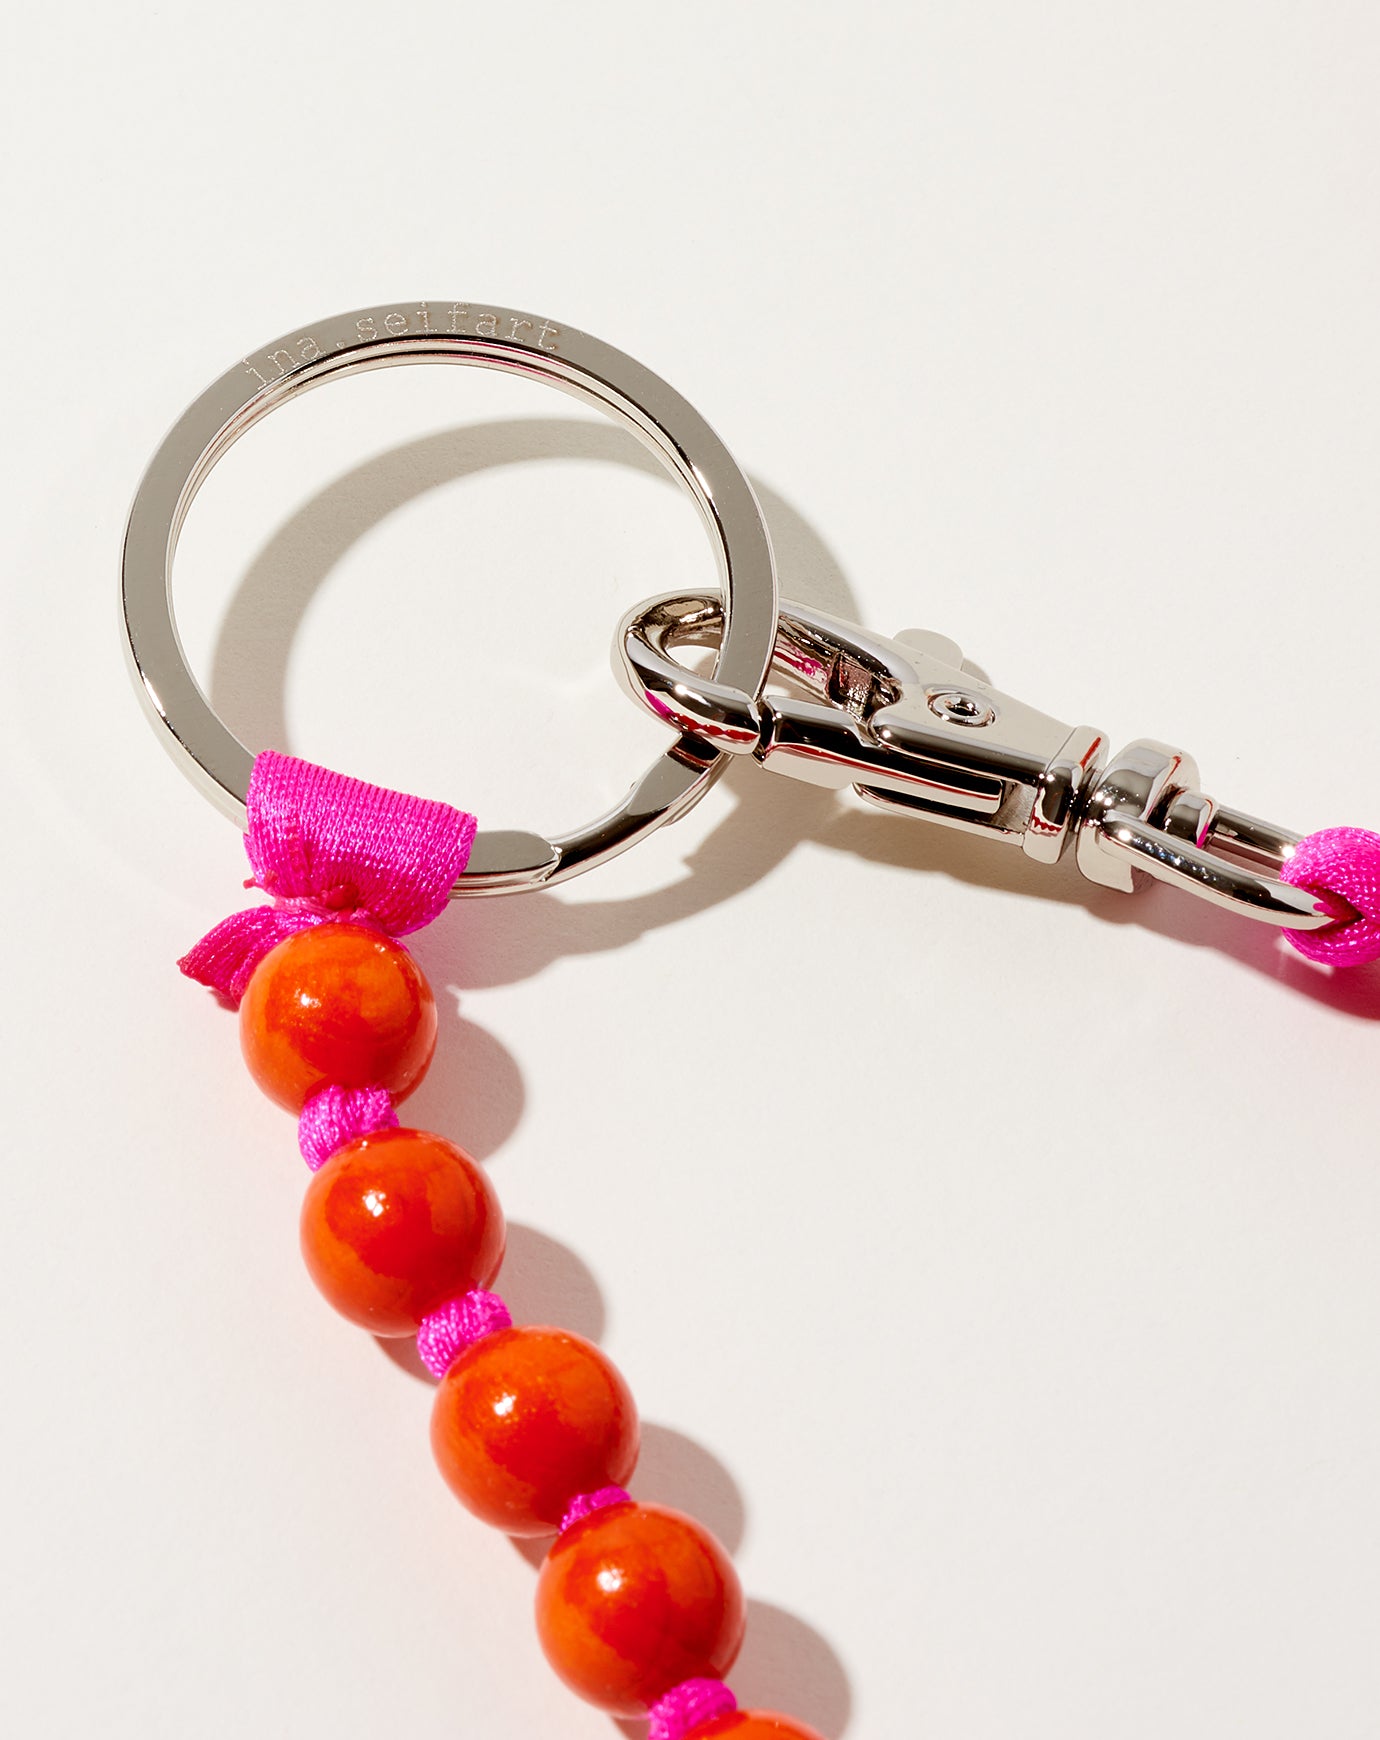 Ina Seifart Perlen Long Keyholder in Orange on Pink